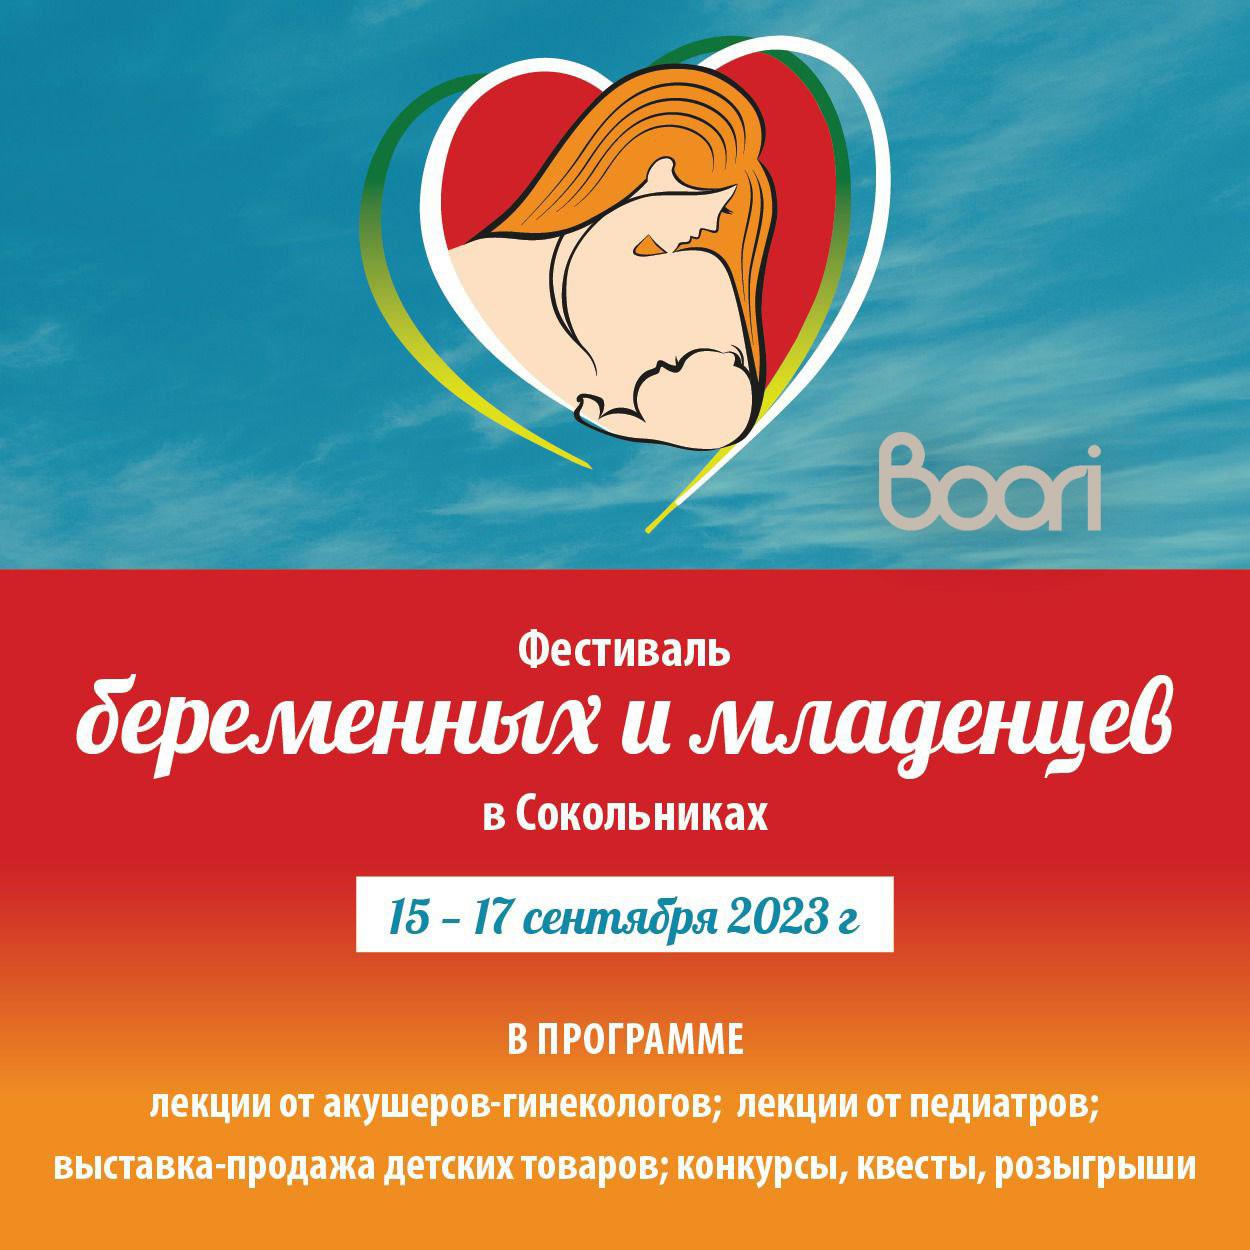 Фестиваль беременных и младенцев 15-17 сентября 2023 года